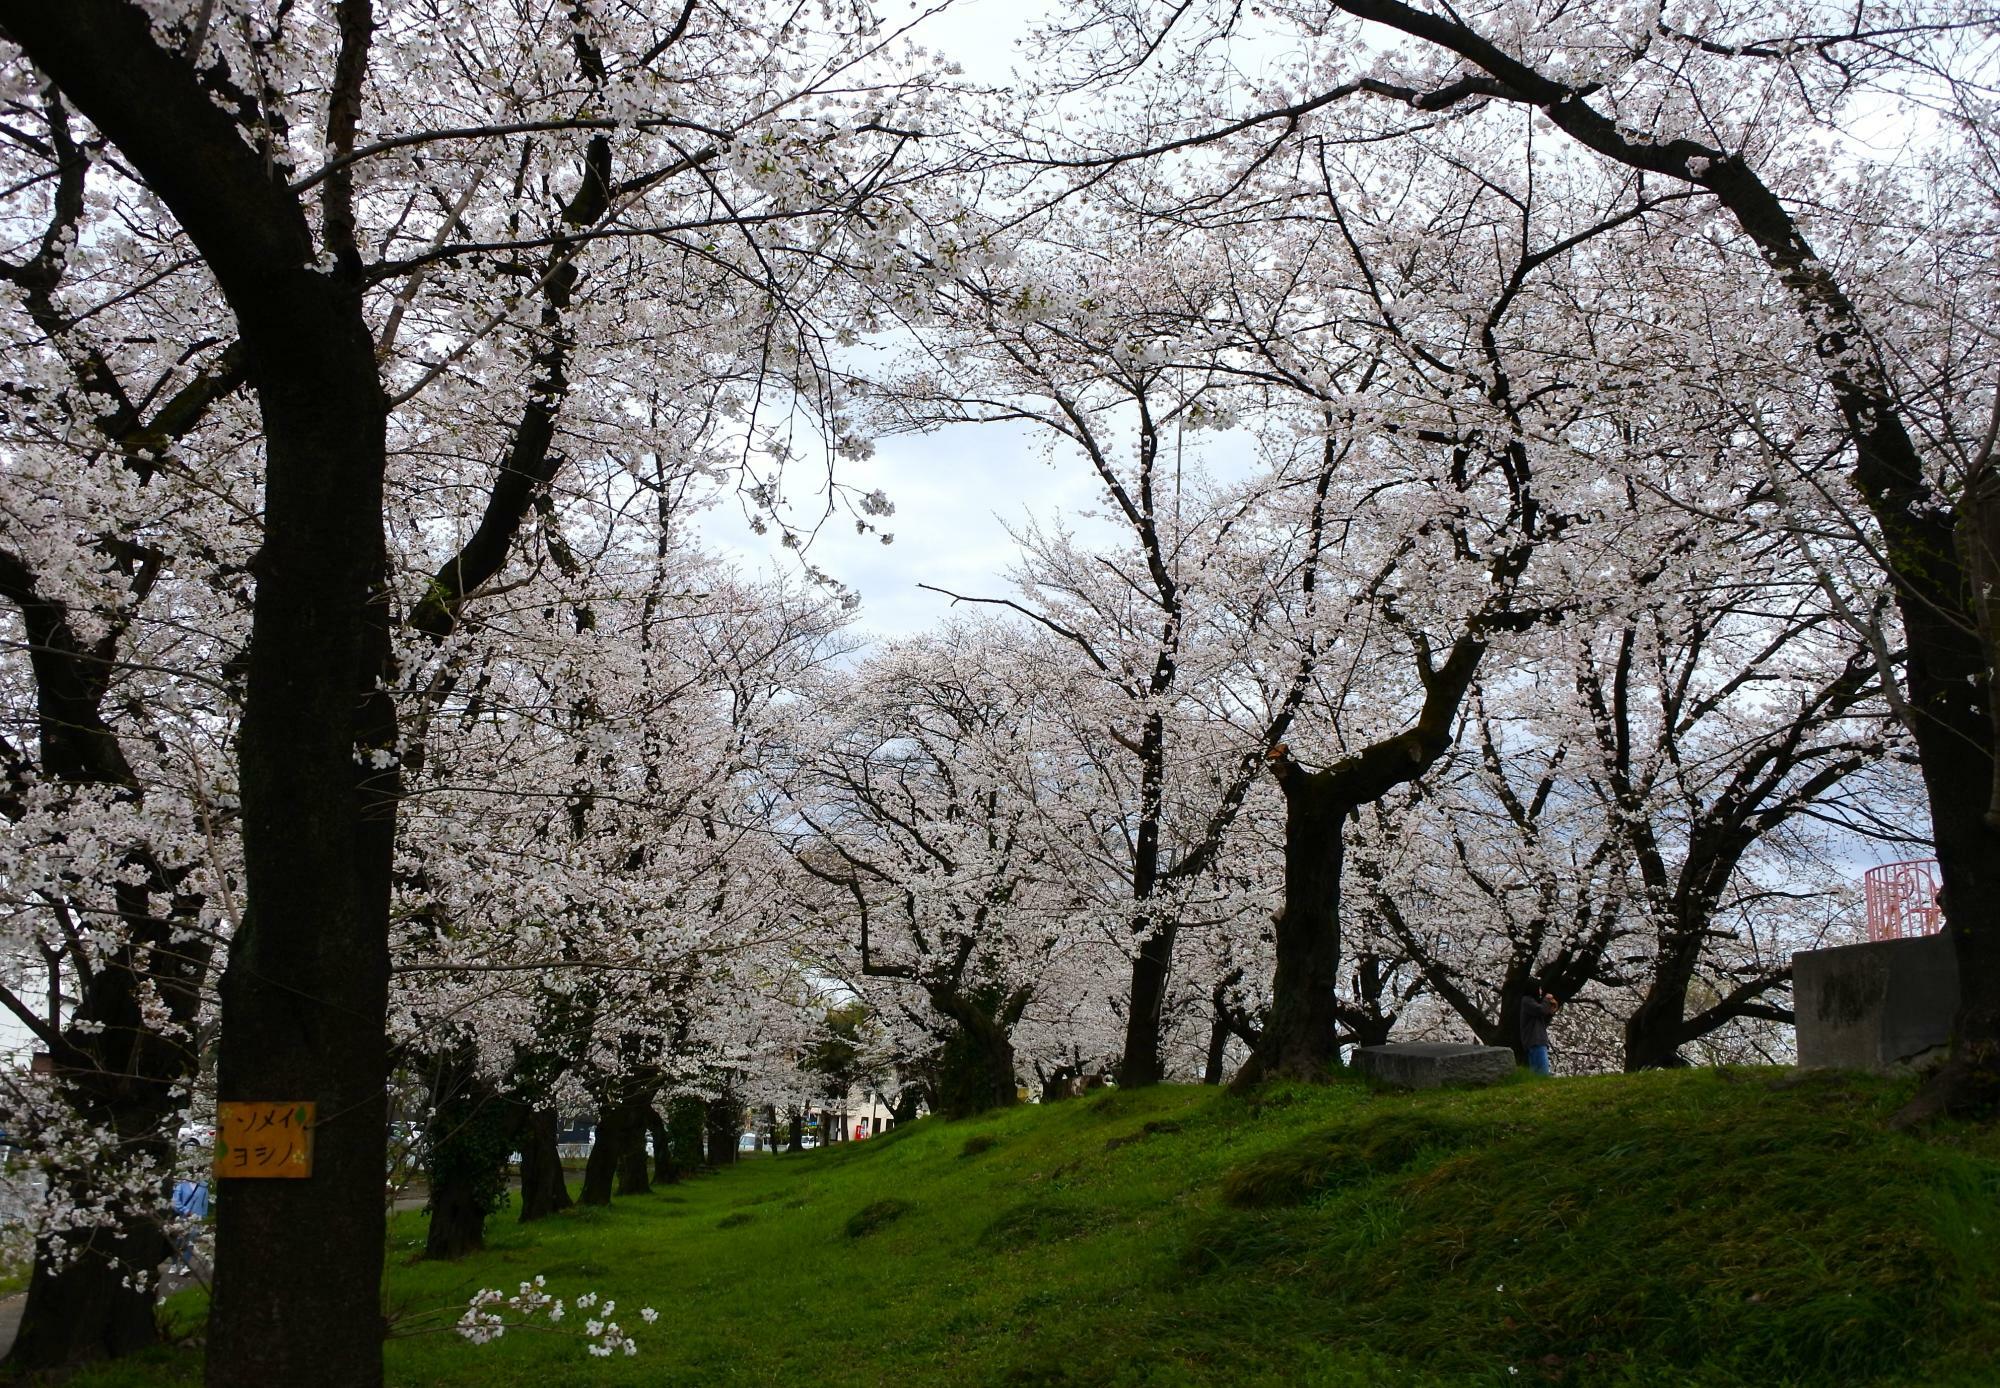 万平公園の桜